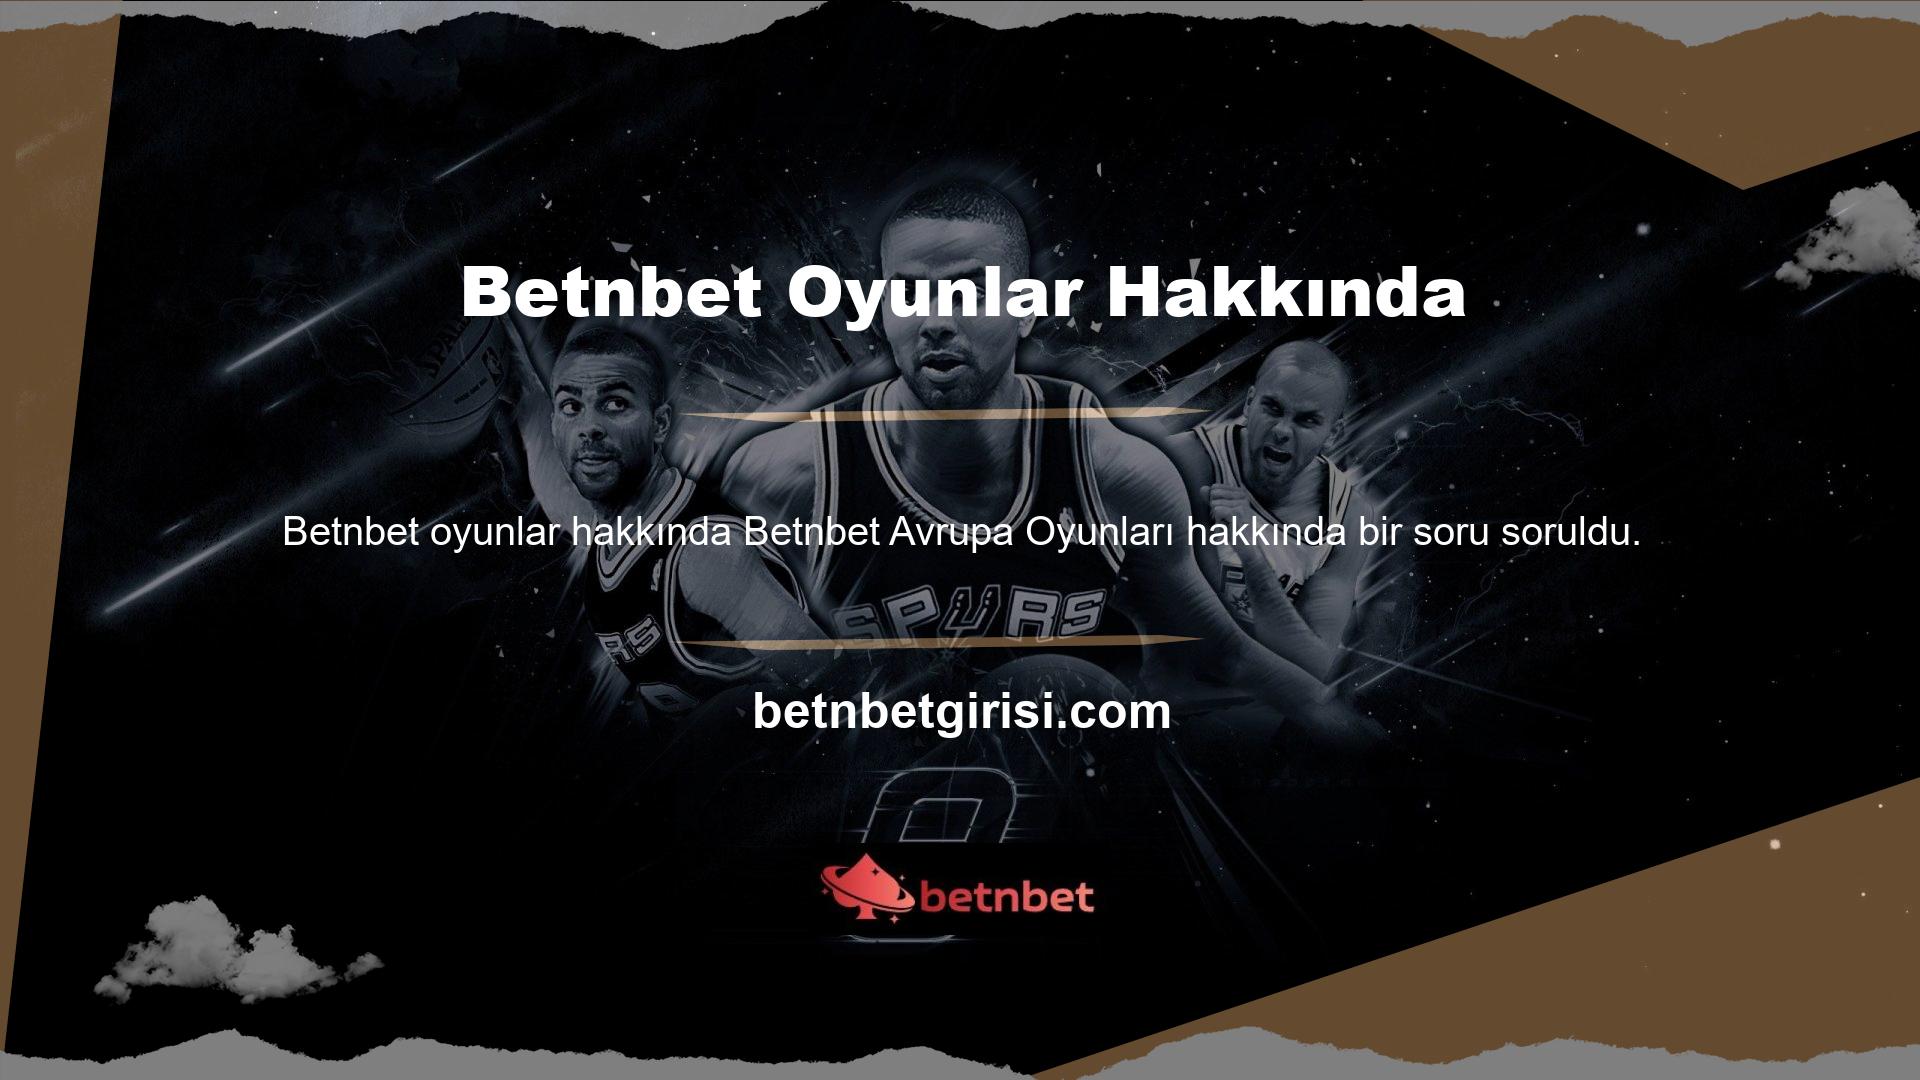 Betnbet web sitesi İngilizce ve Türkçe olarak mevcuttur, dolayısıyla Türkiye'den gelen ziyaretçiler sitenin Türkiye genelinde açık olduğundan emin olabilirler